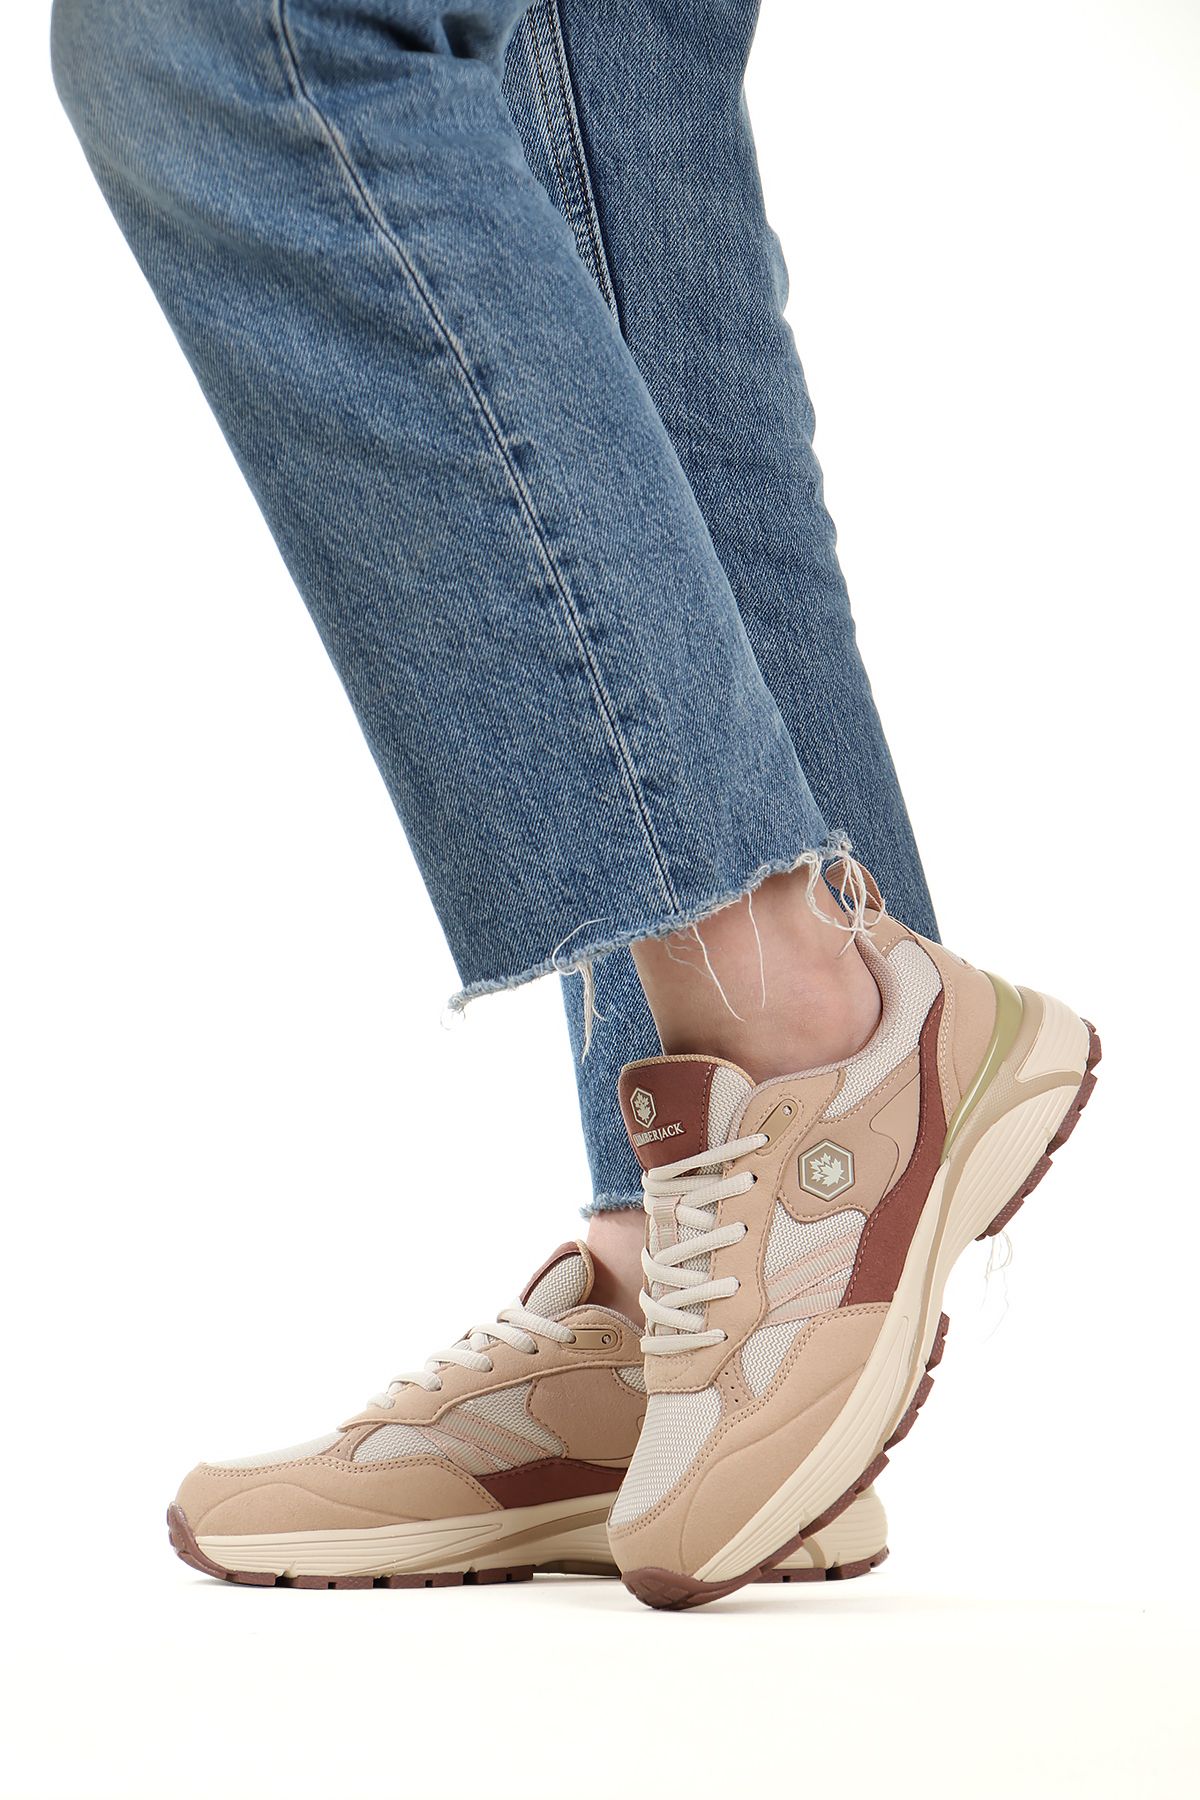 Lumberjack Bonte Comfort Taban Kadın Sneaker Ayakkabı